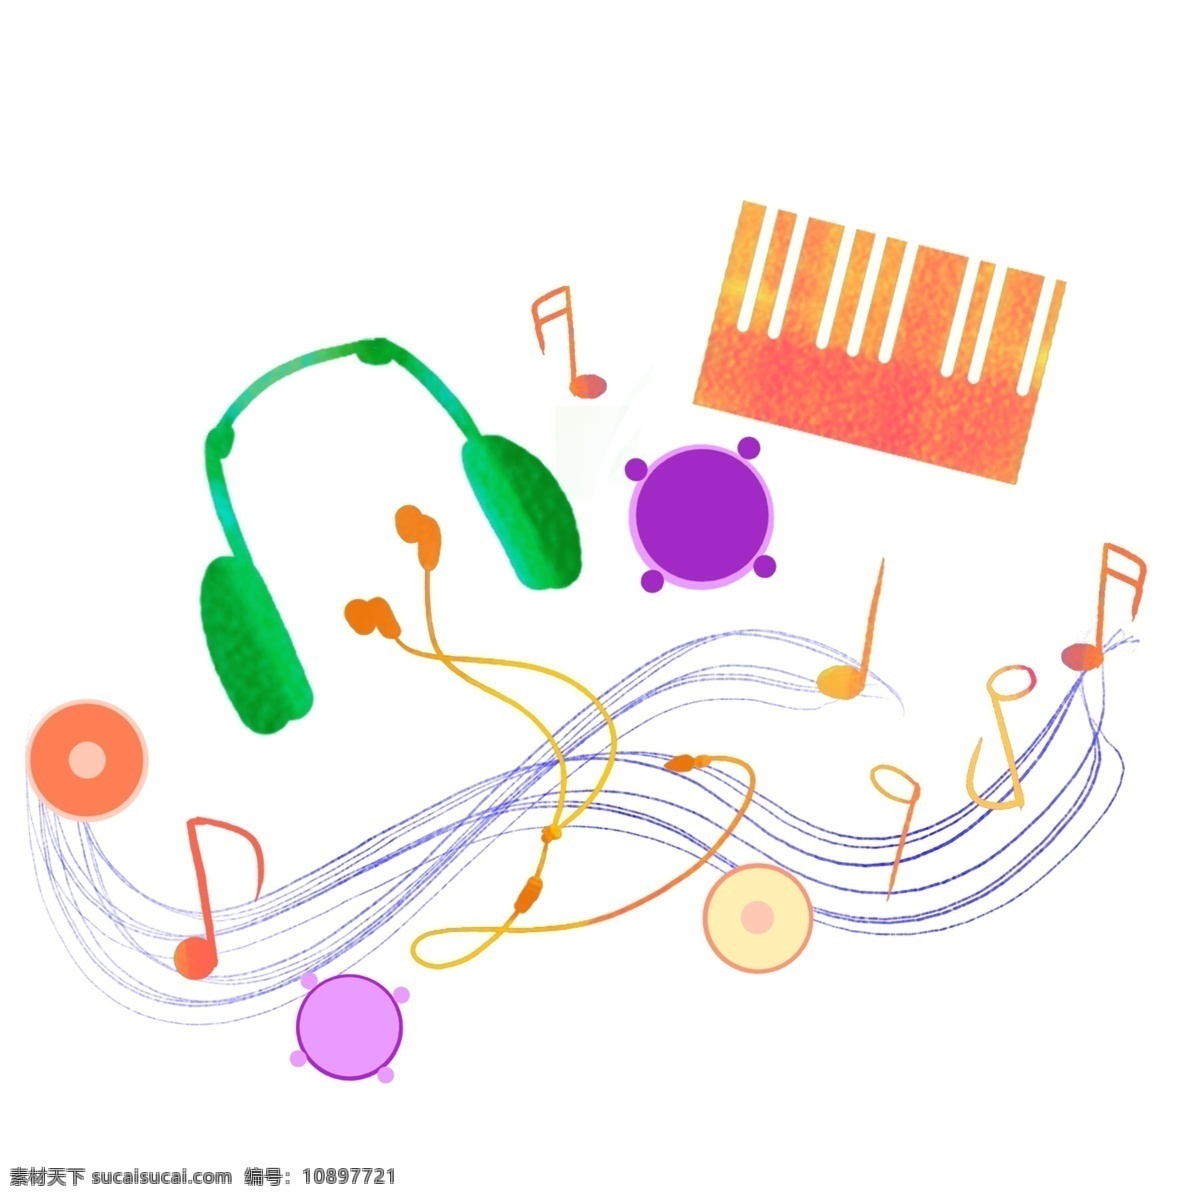 音乐 耳机 五线谱 插画 绿色耳机 蓝色线条 五线谱装饰 卡通插画 橘色琴键 音乐乐器 卡通音符 乐符插画